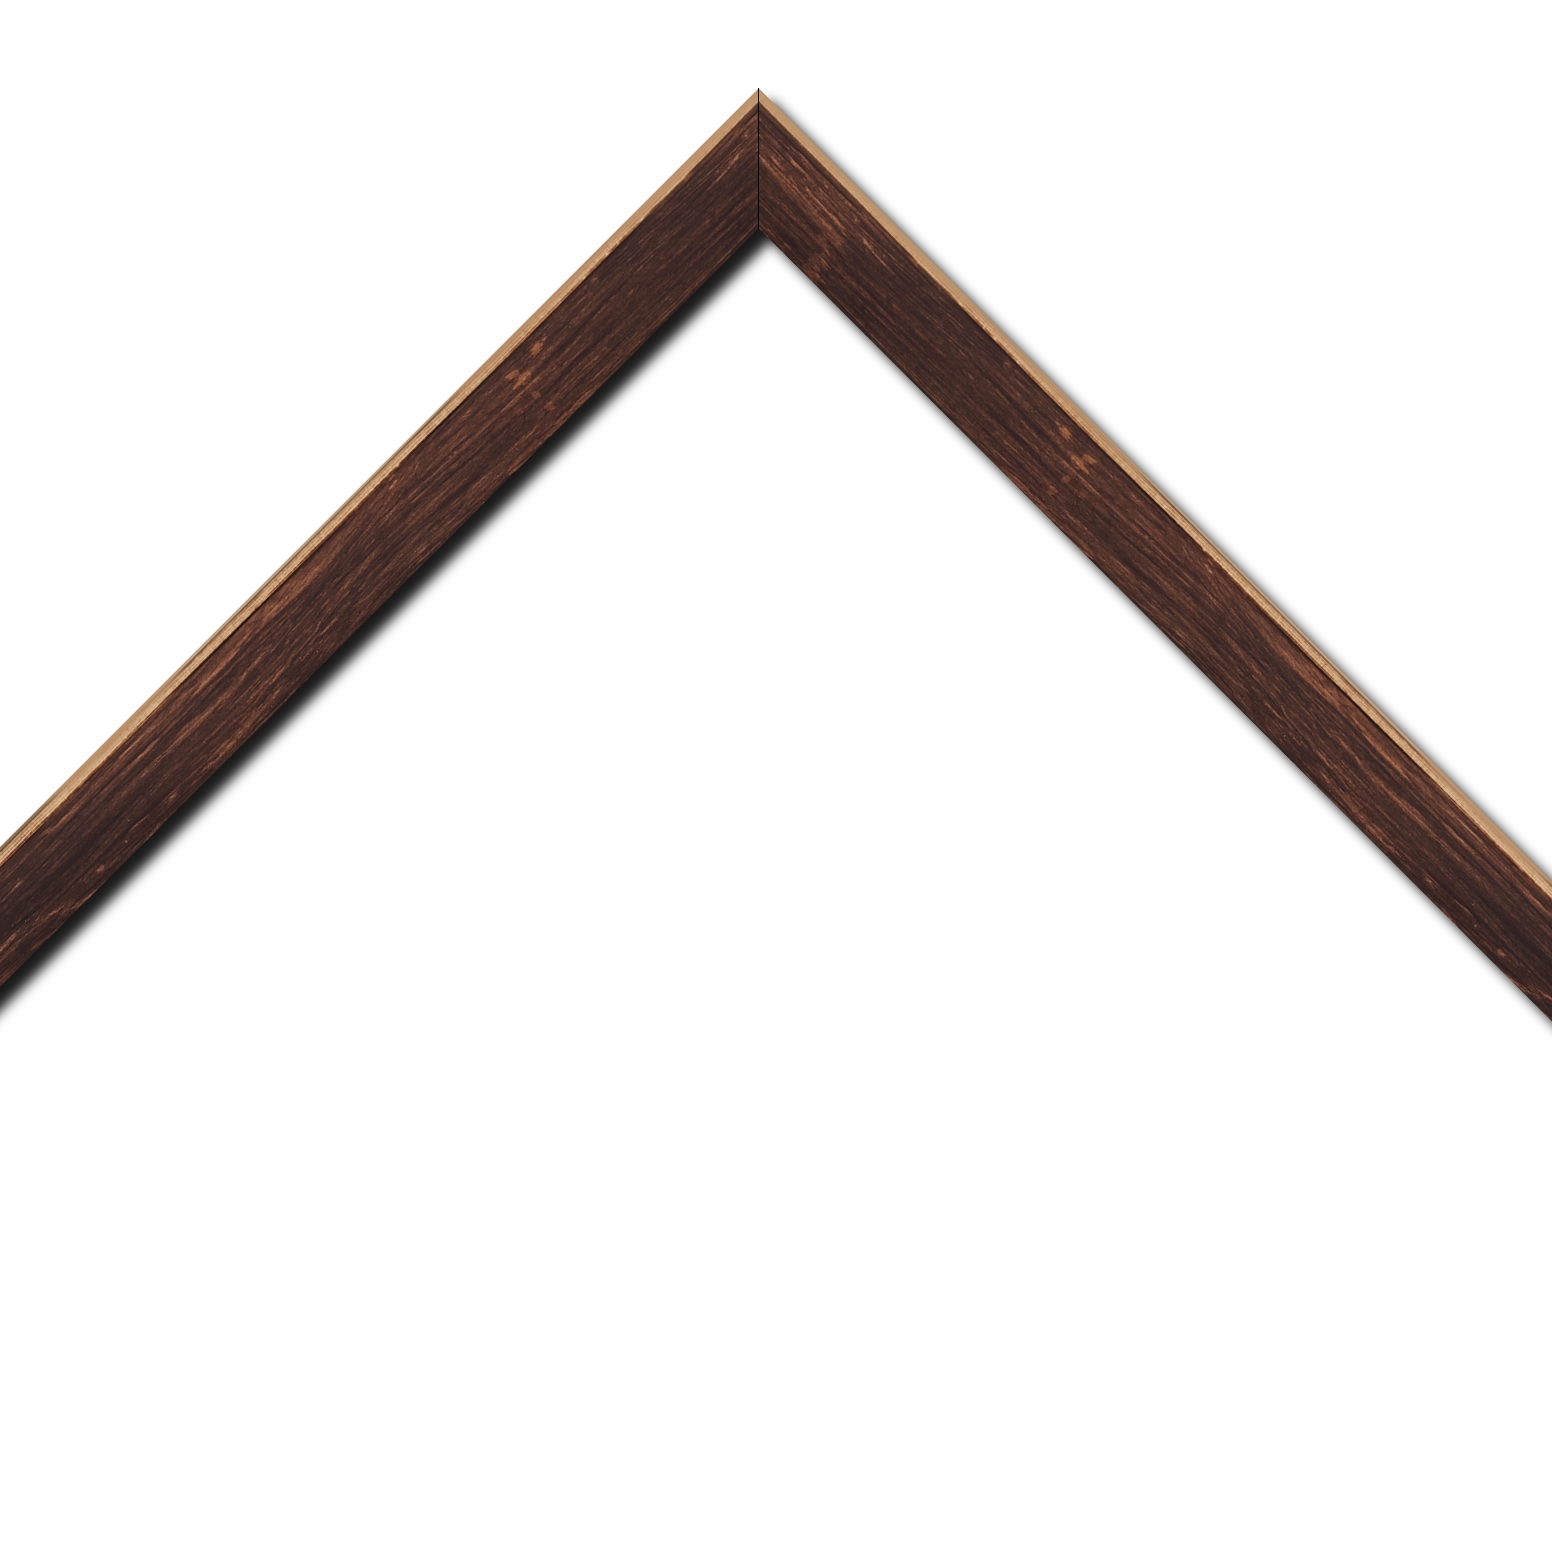 Baguette bois profil arrondi en pente plongeant largeur 2.4cm couleur marron effet ressuyé, angle du cadre extérieur filet naturel